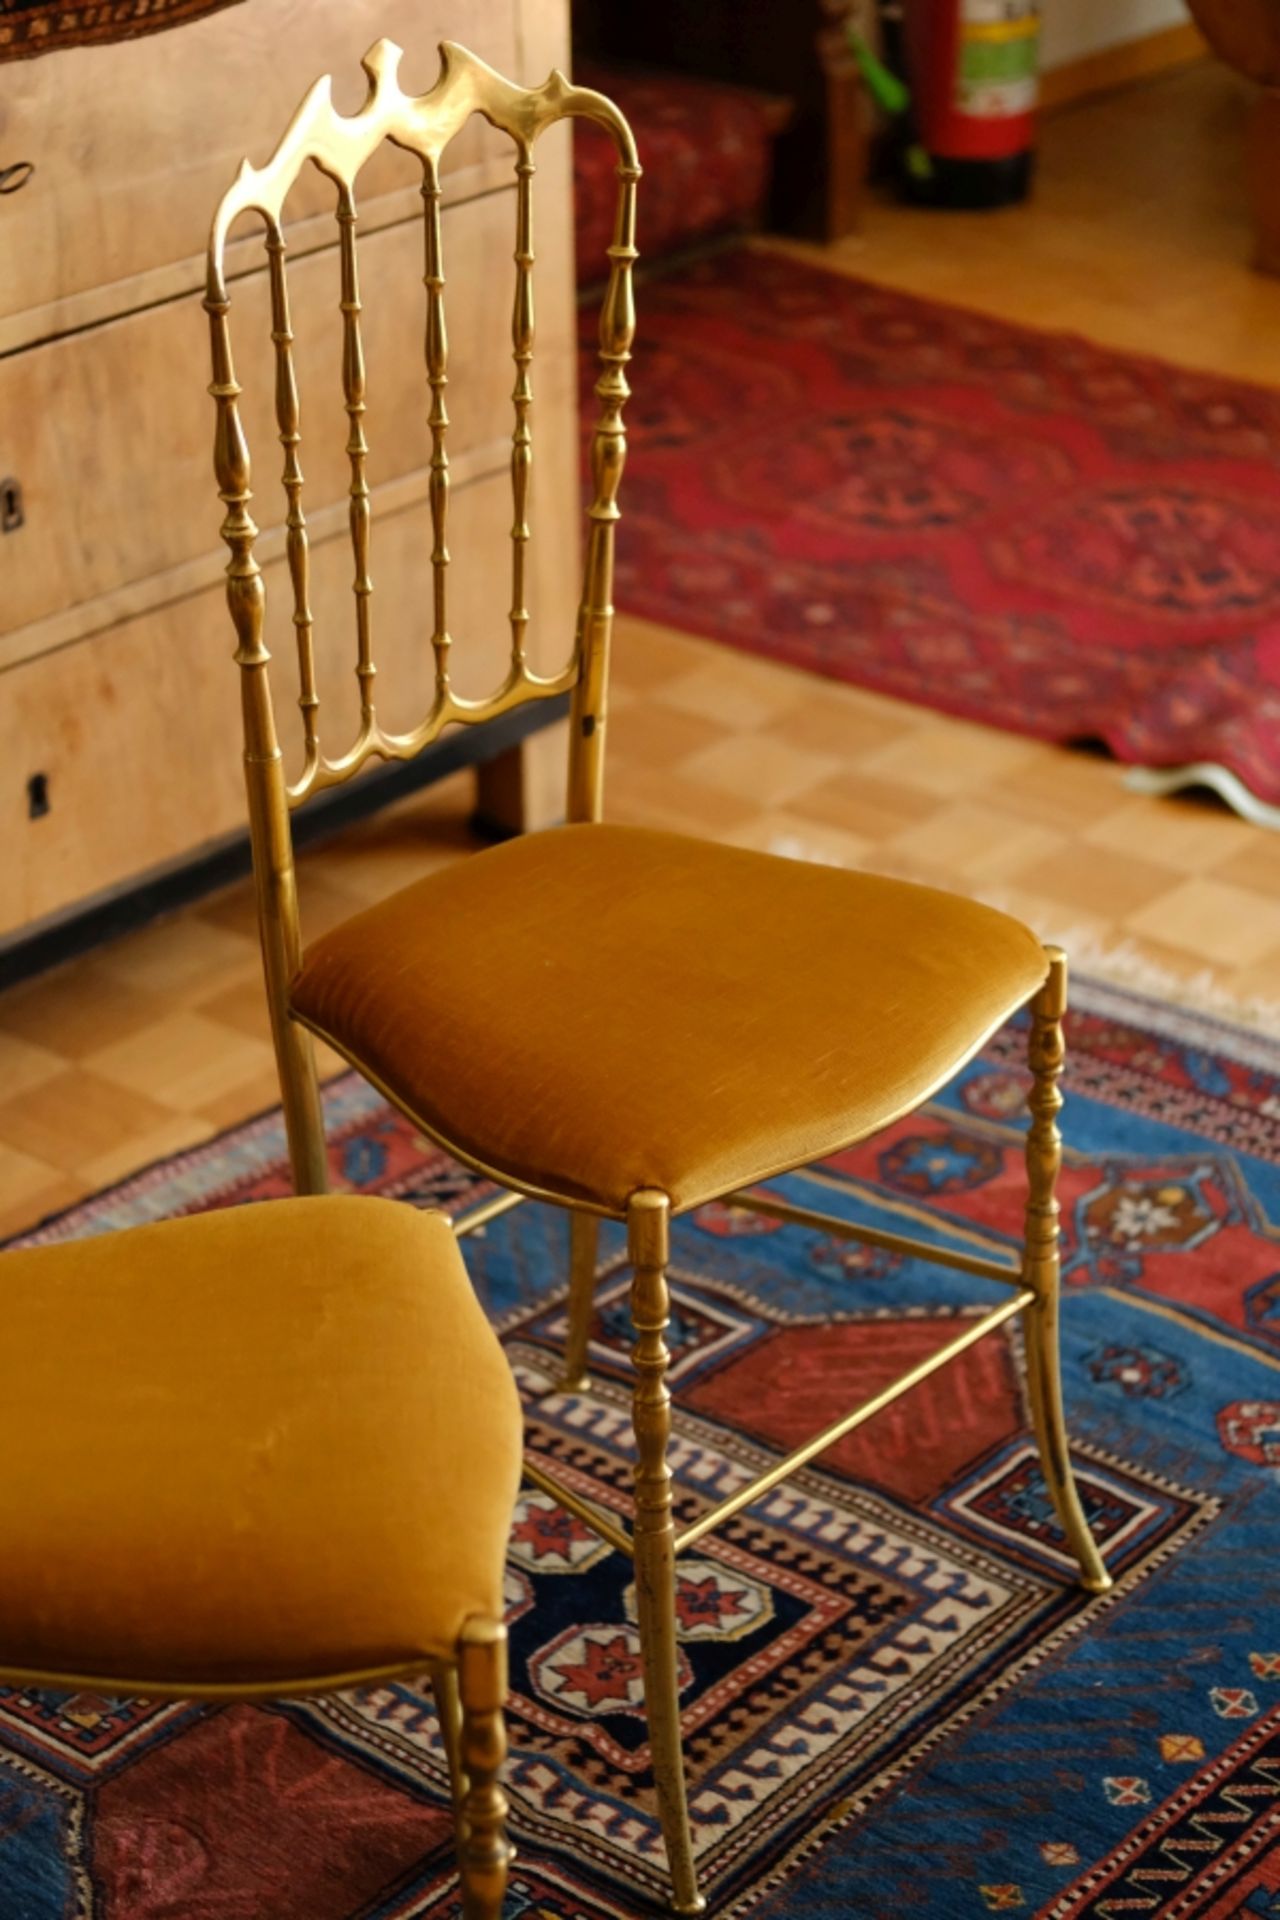 METALLSTÜHLE, zwei messingfarbene Metallstühle im Stil von Chiavari-Stühlen, Polsterung mit gelbem - Image 2 of 3